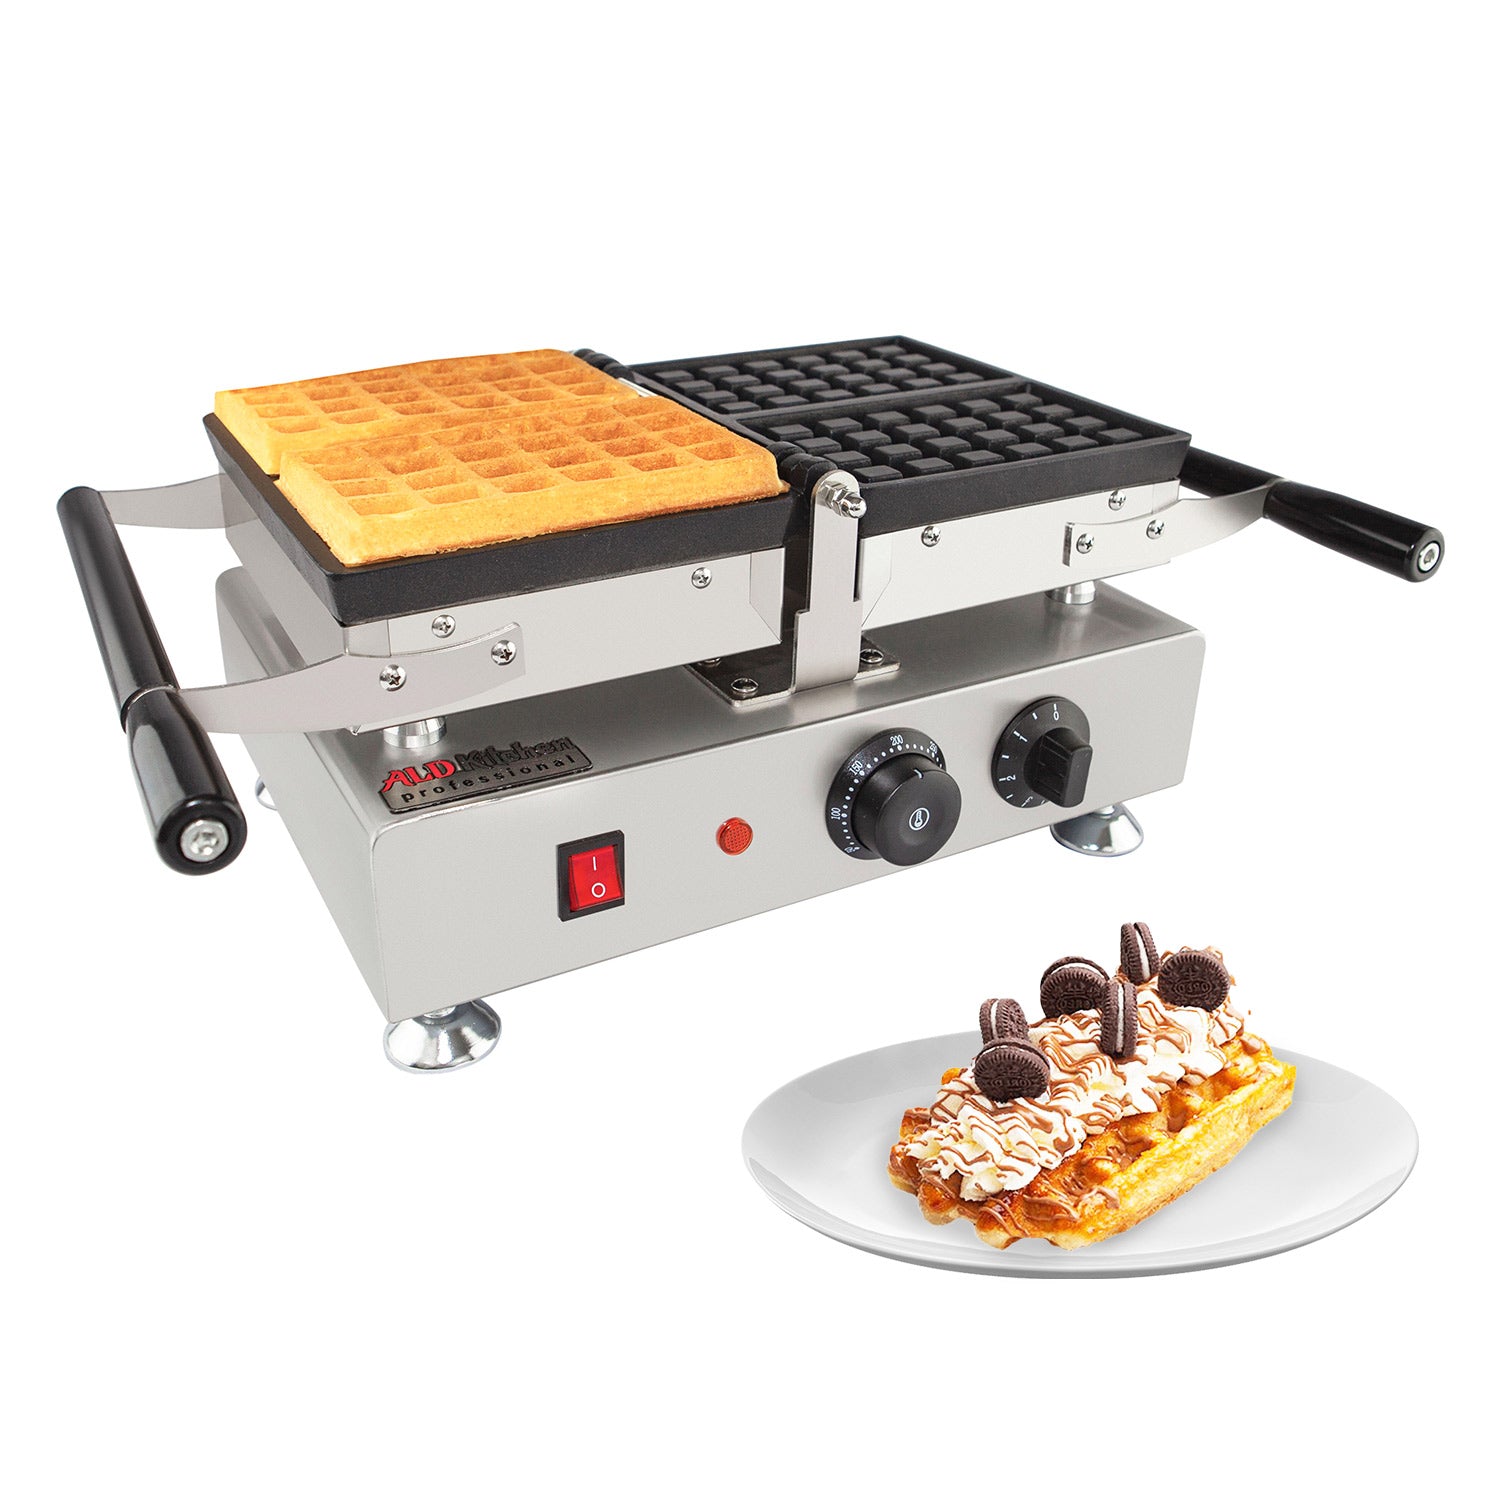 ALDKitchen Stick Waffle Maker | Professional Stainless Steel Waffle Stick Machine | 4 Big Waffles